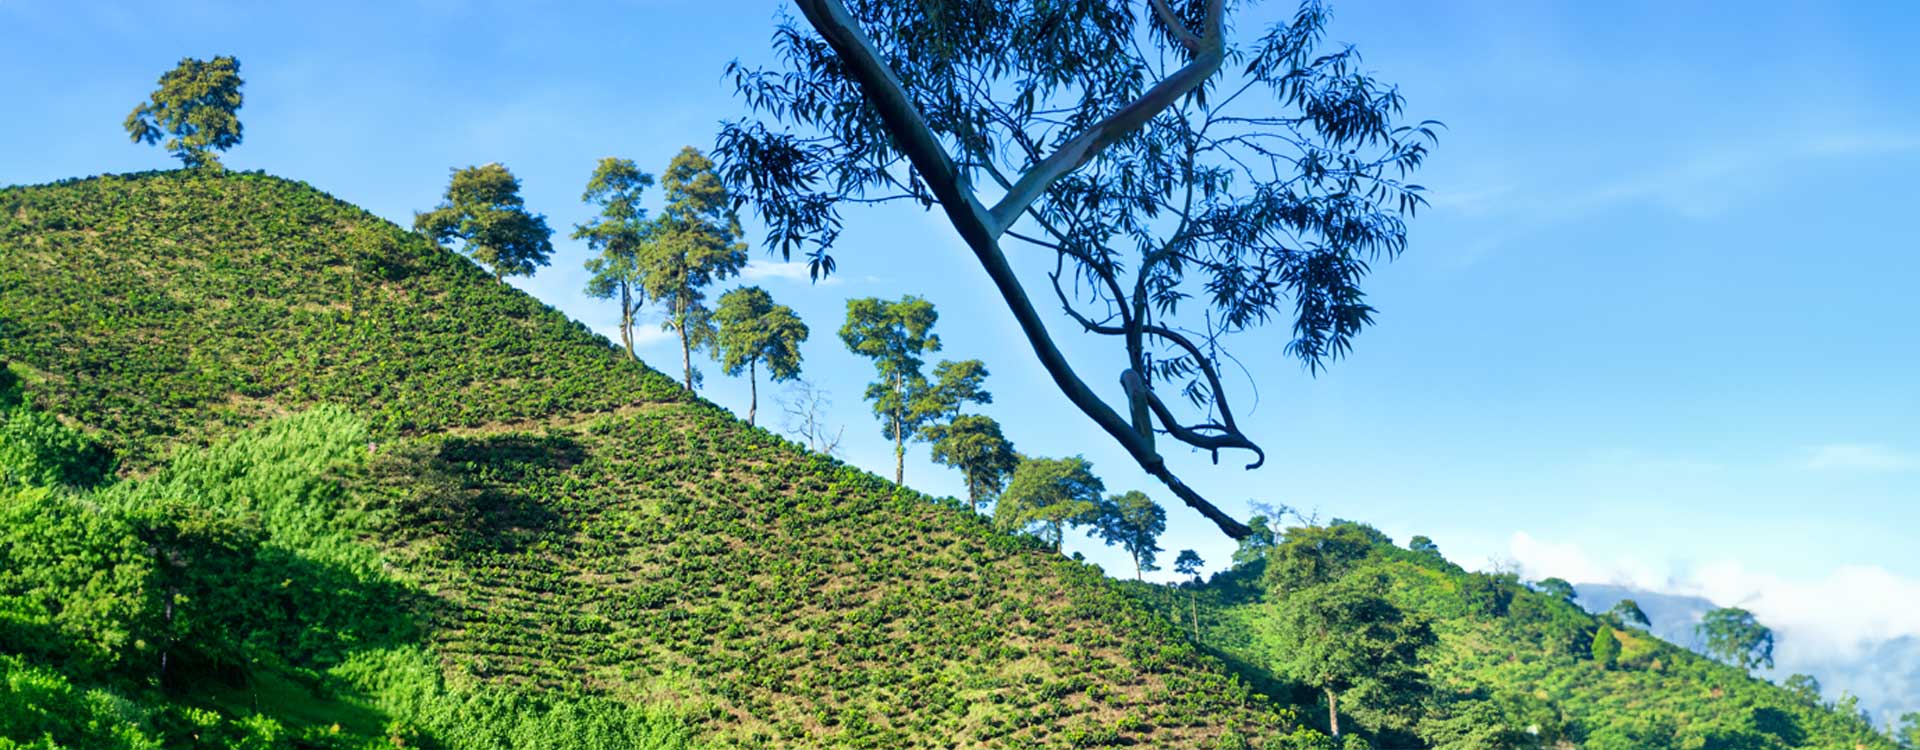 Plantacja kawy Brazylia Santos